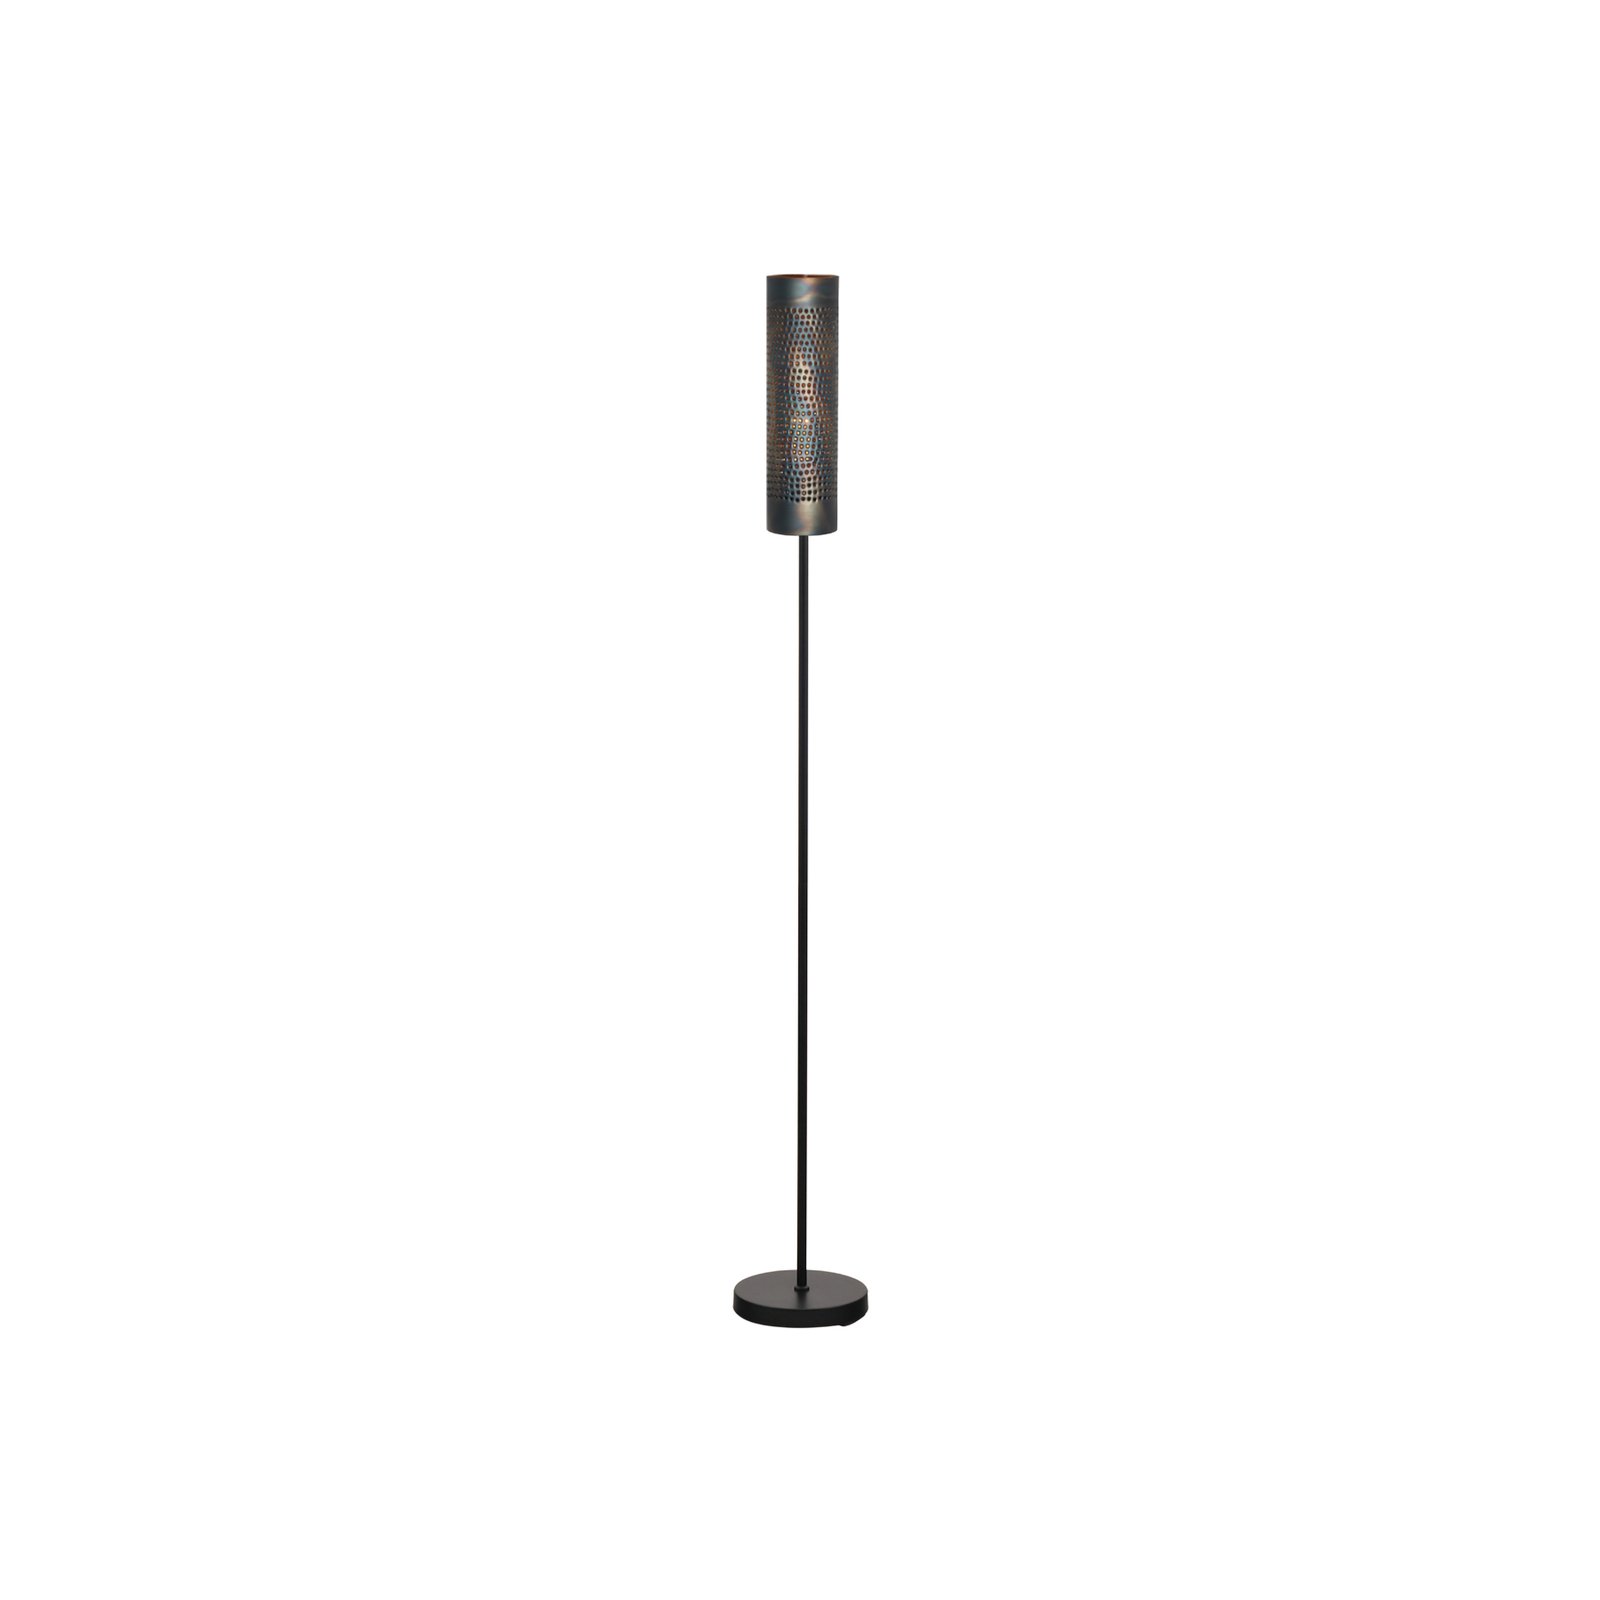 Forato gulvlampe, høyde 174 cm, brun, metall